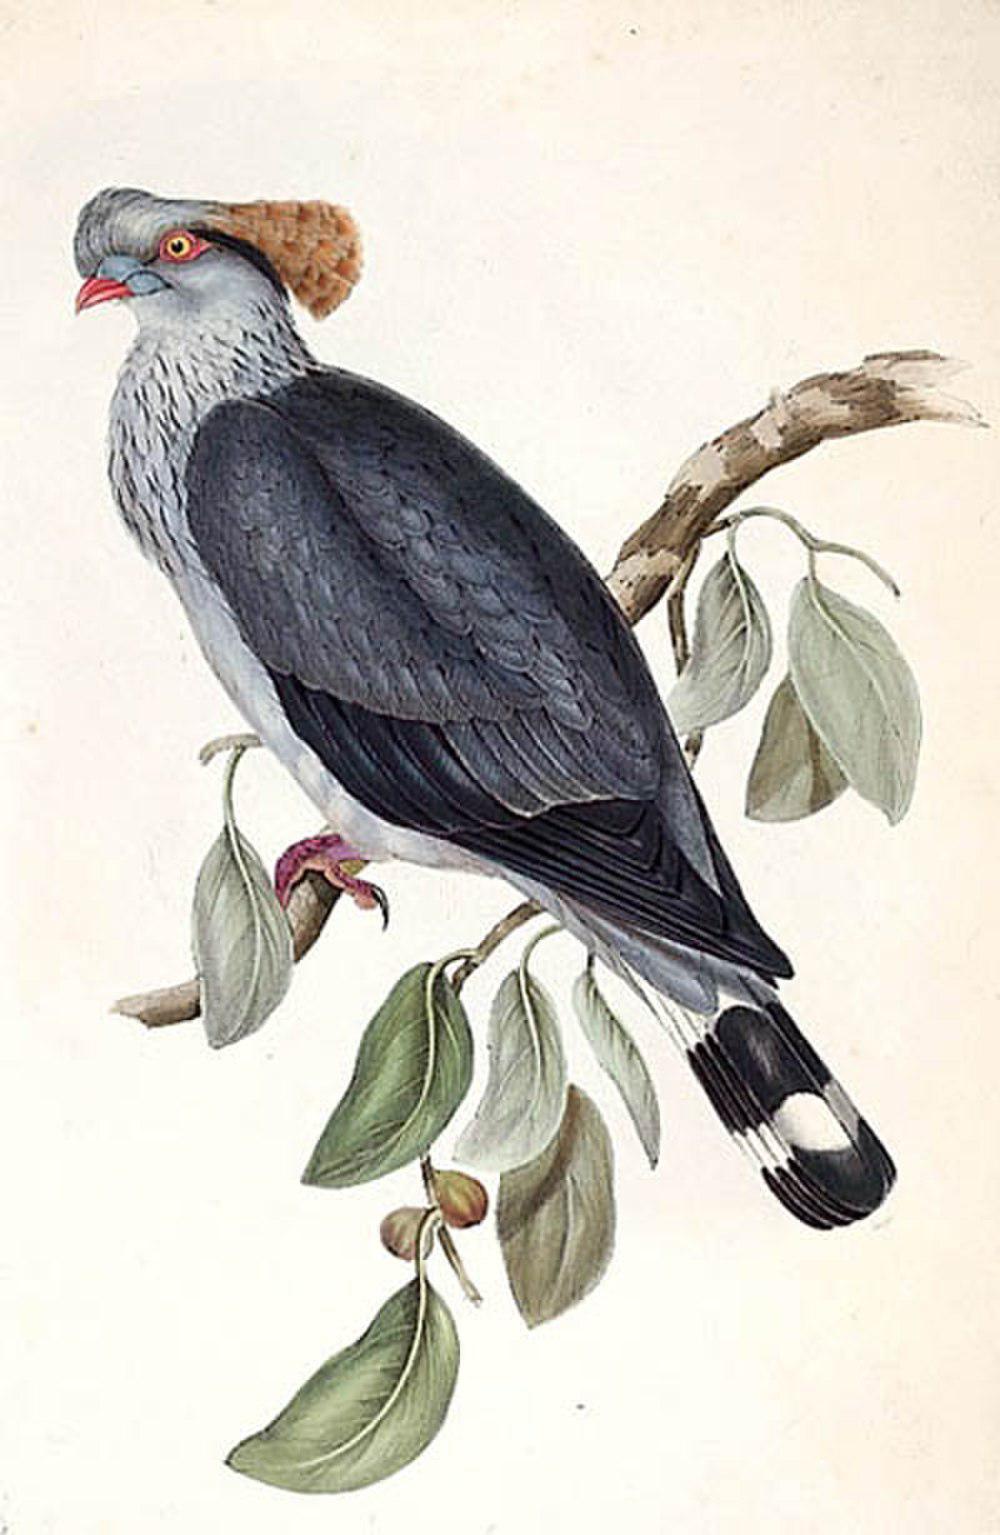 髻鸠 / Topknot Pigeon / Lopholaimus antarcticus